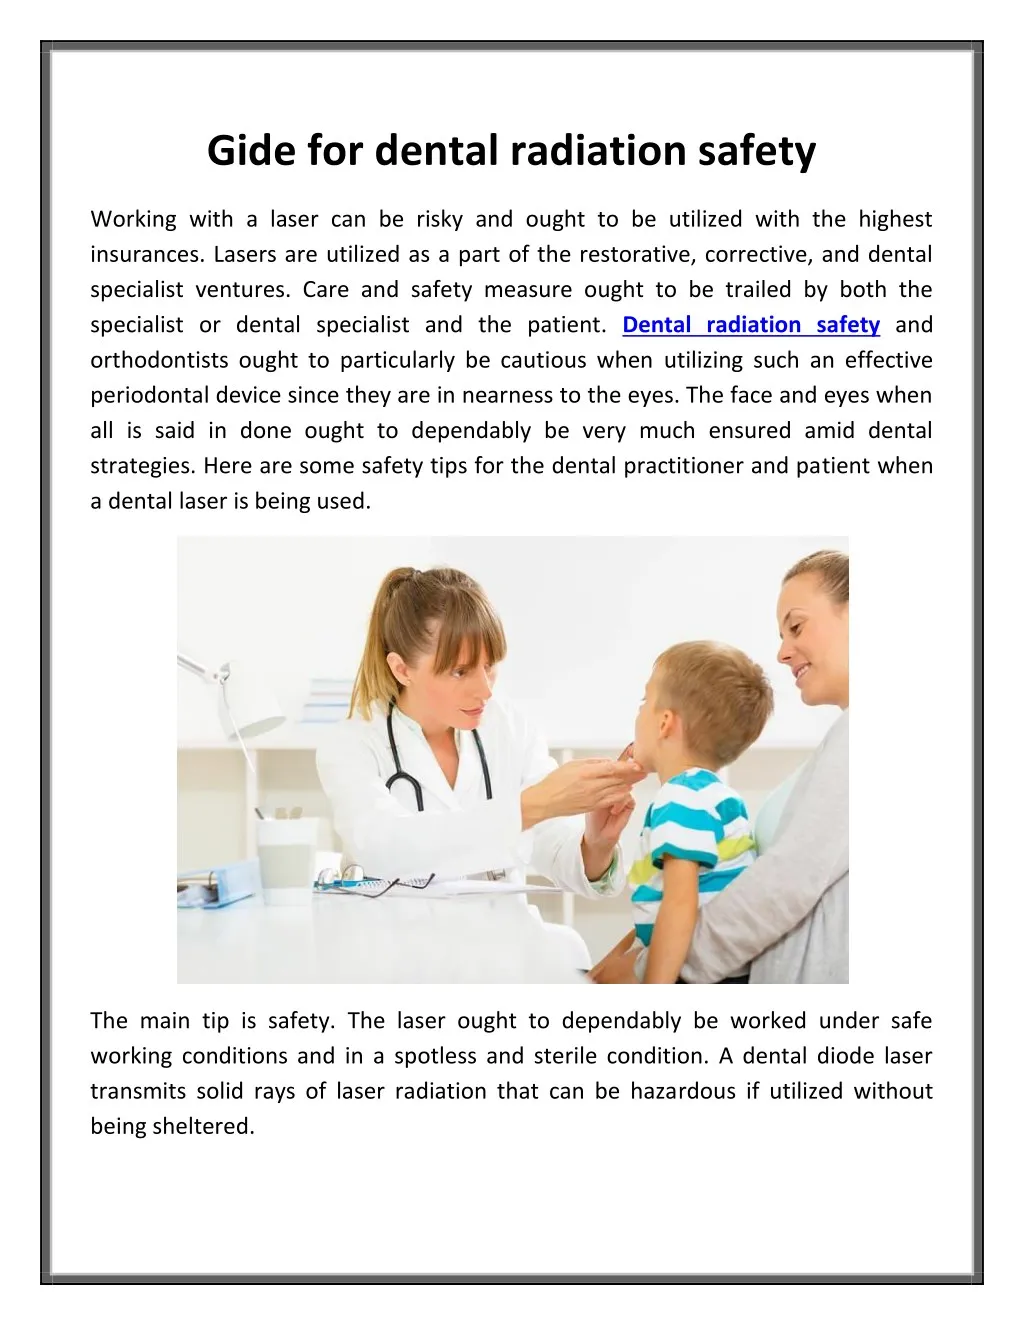 gide for dental radiation safety